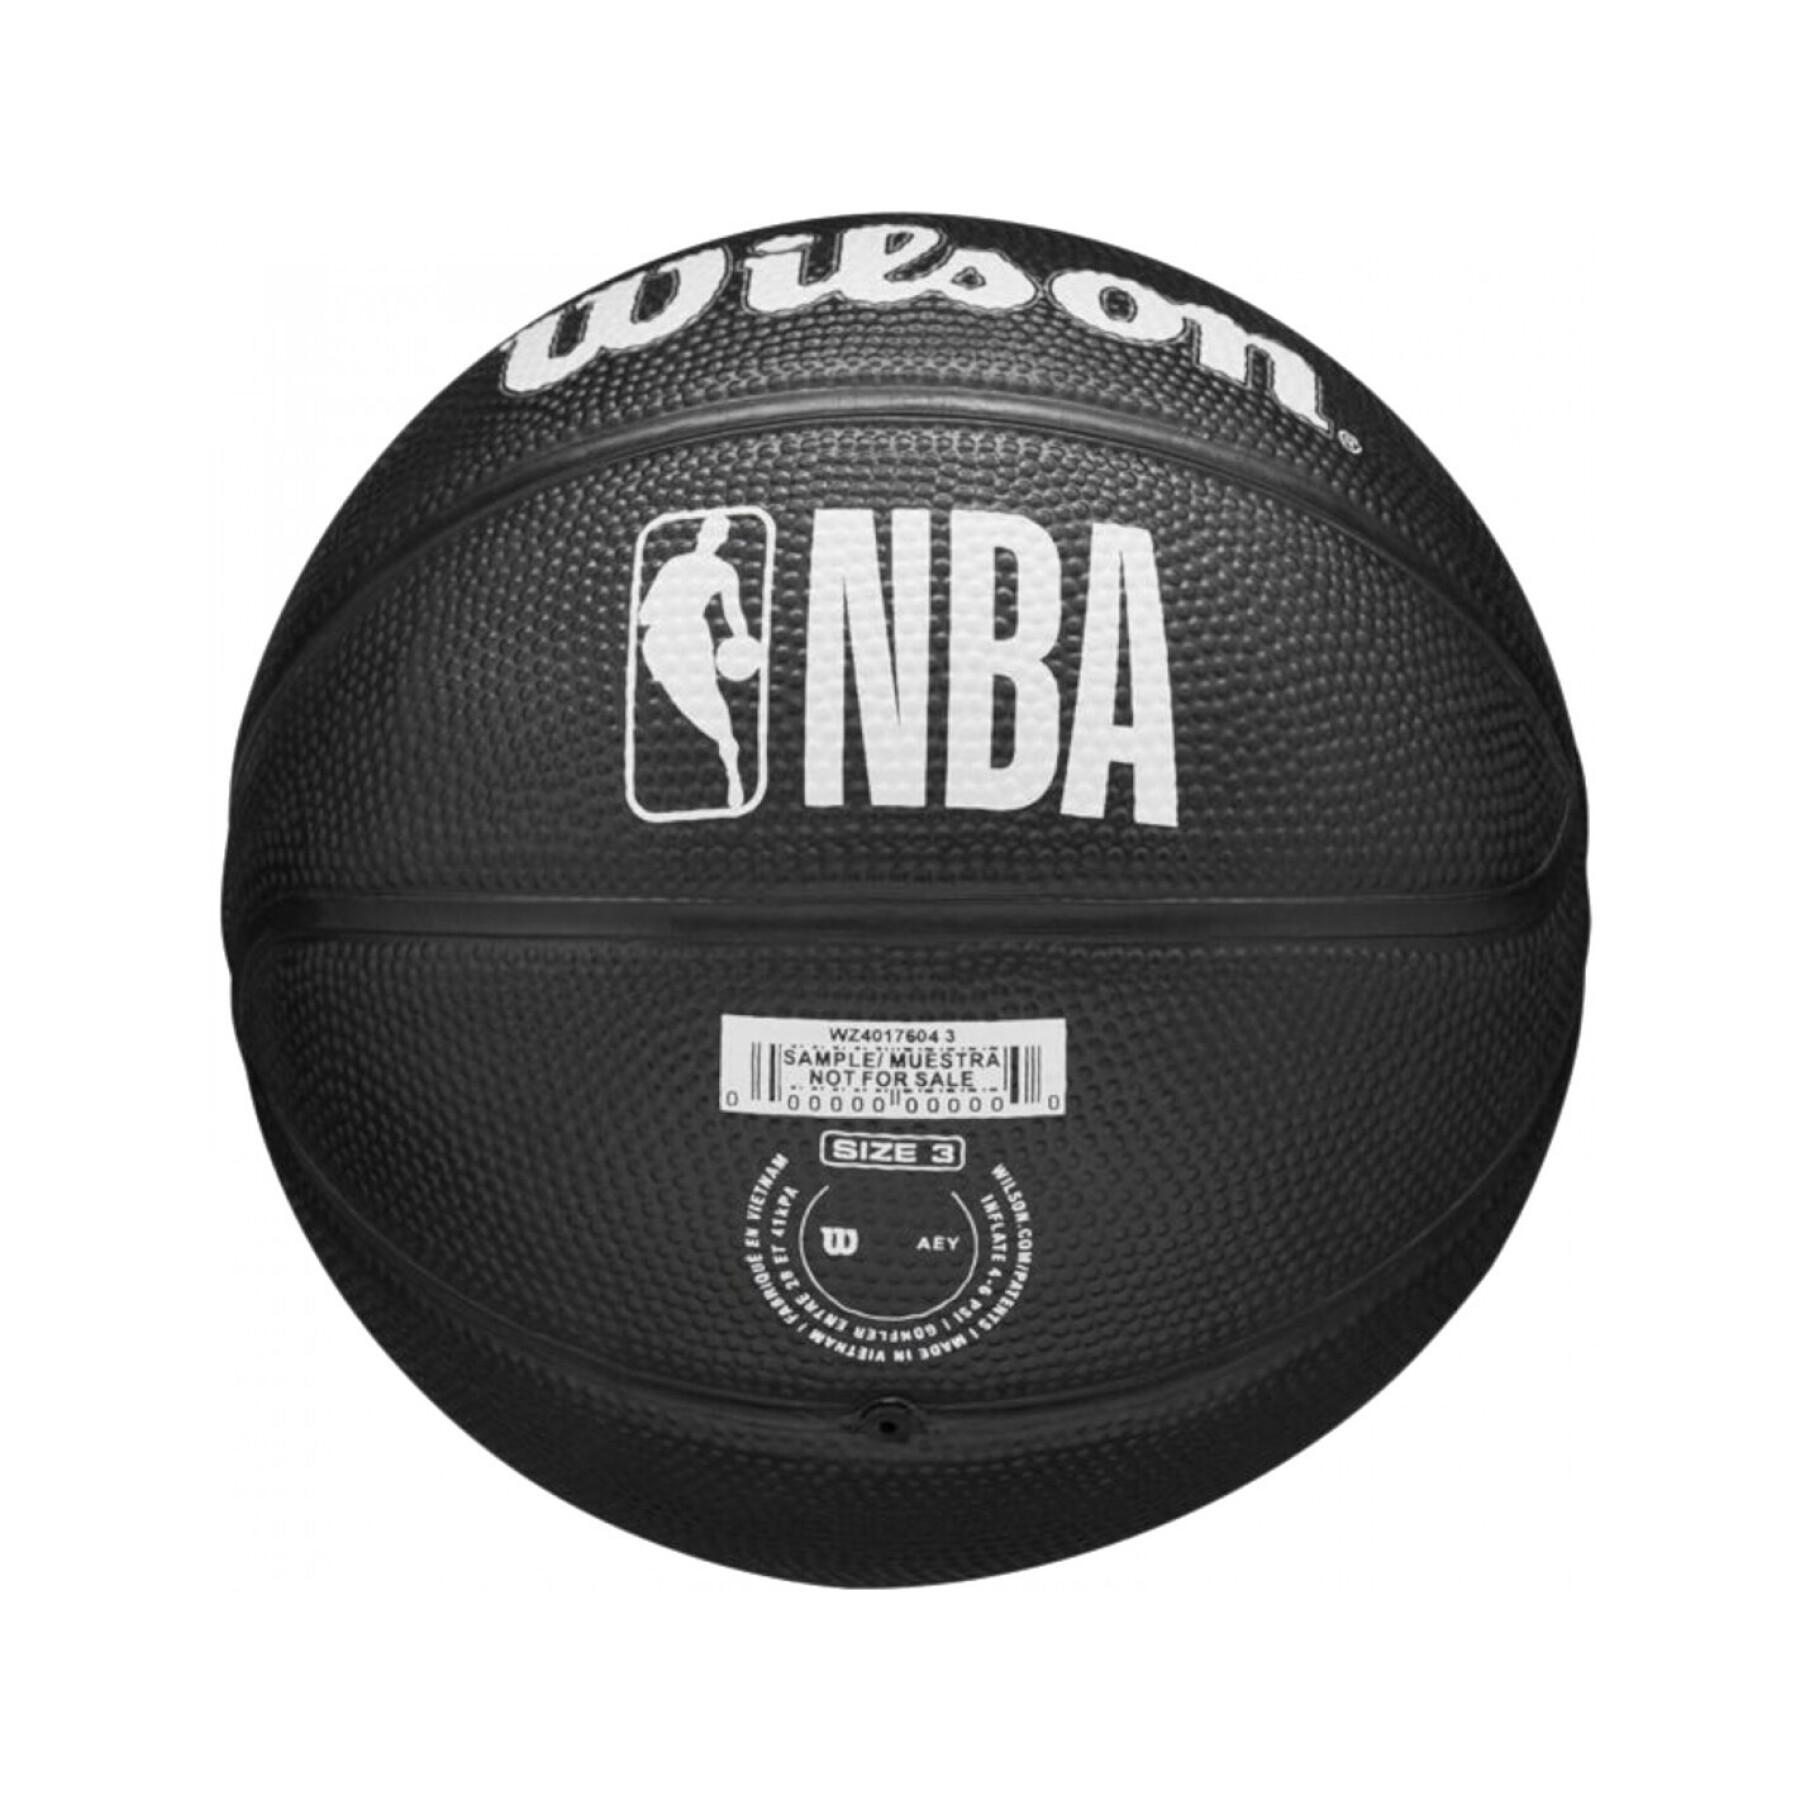 Mini balão para crianças Brooklyn Nets NBA Team Tribute